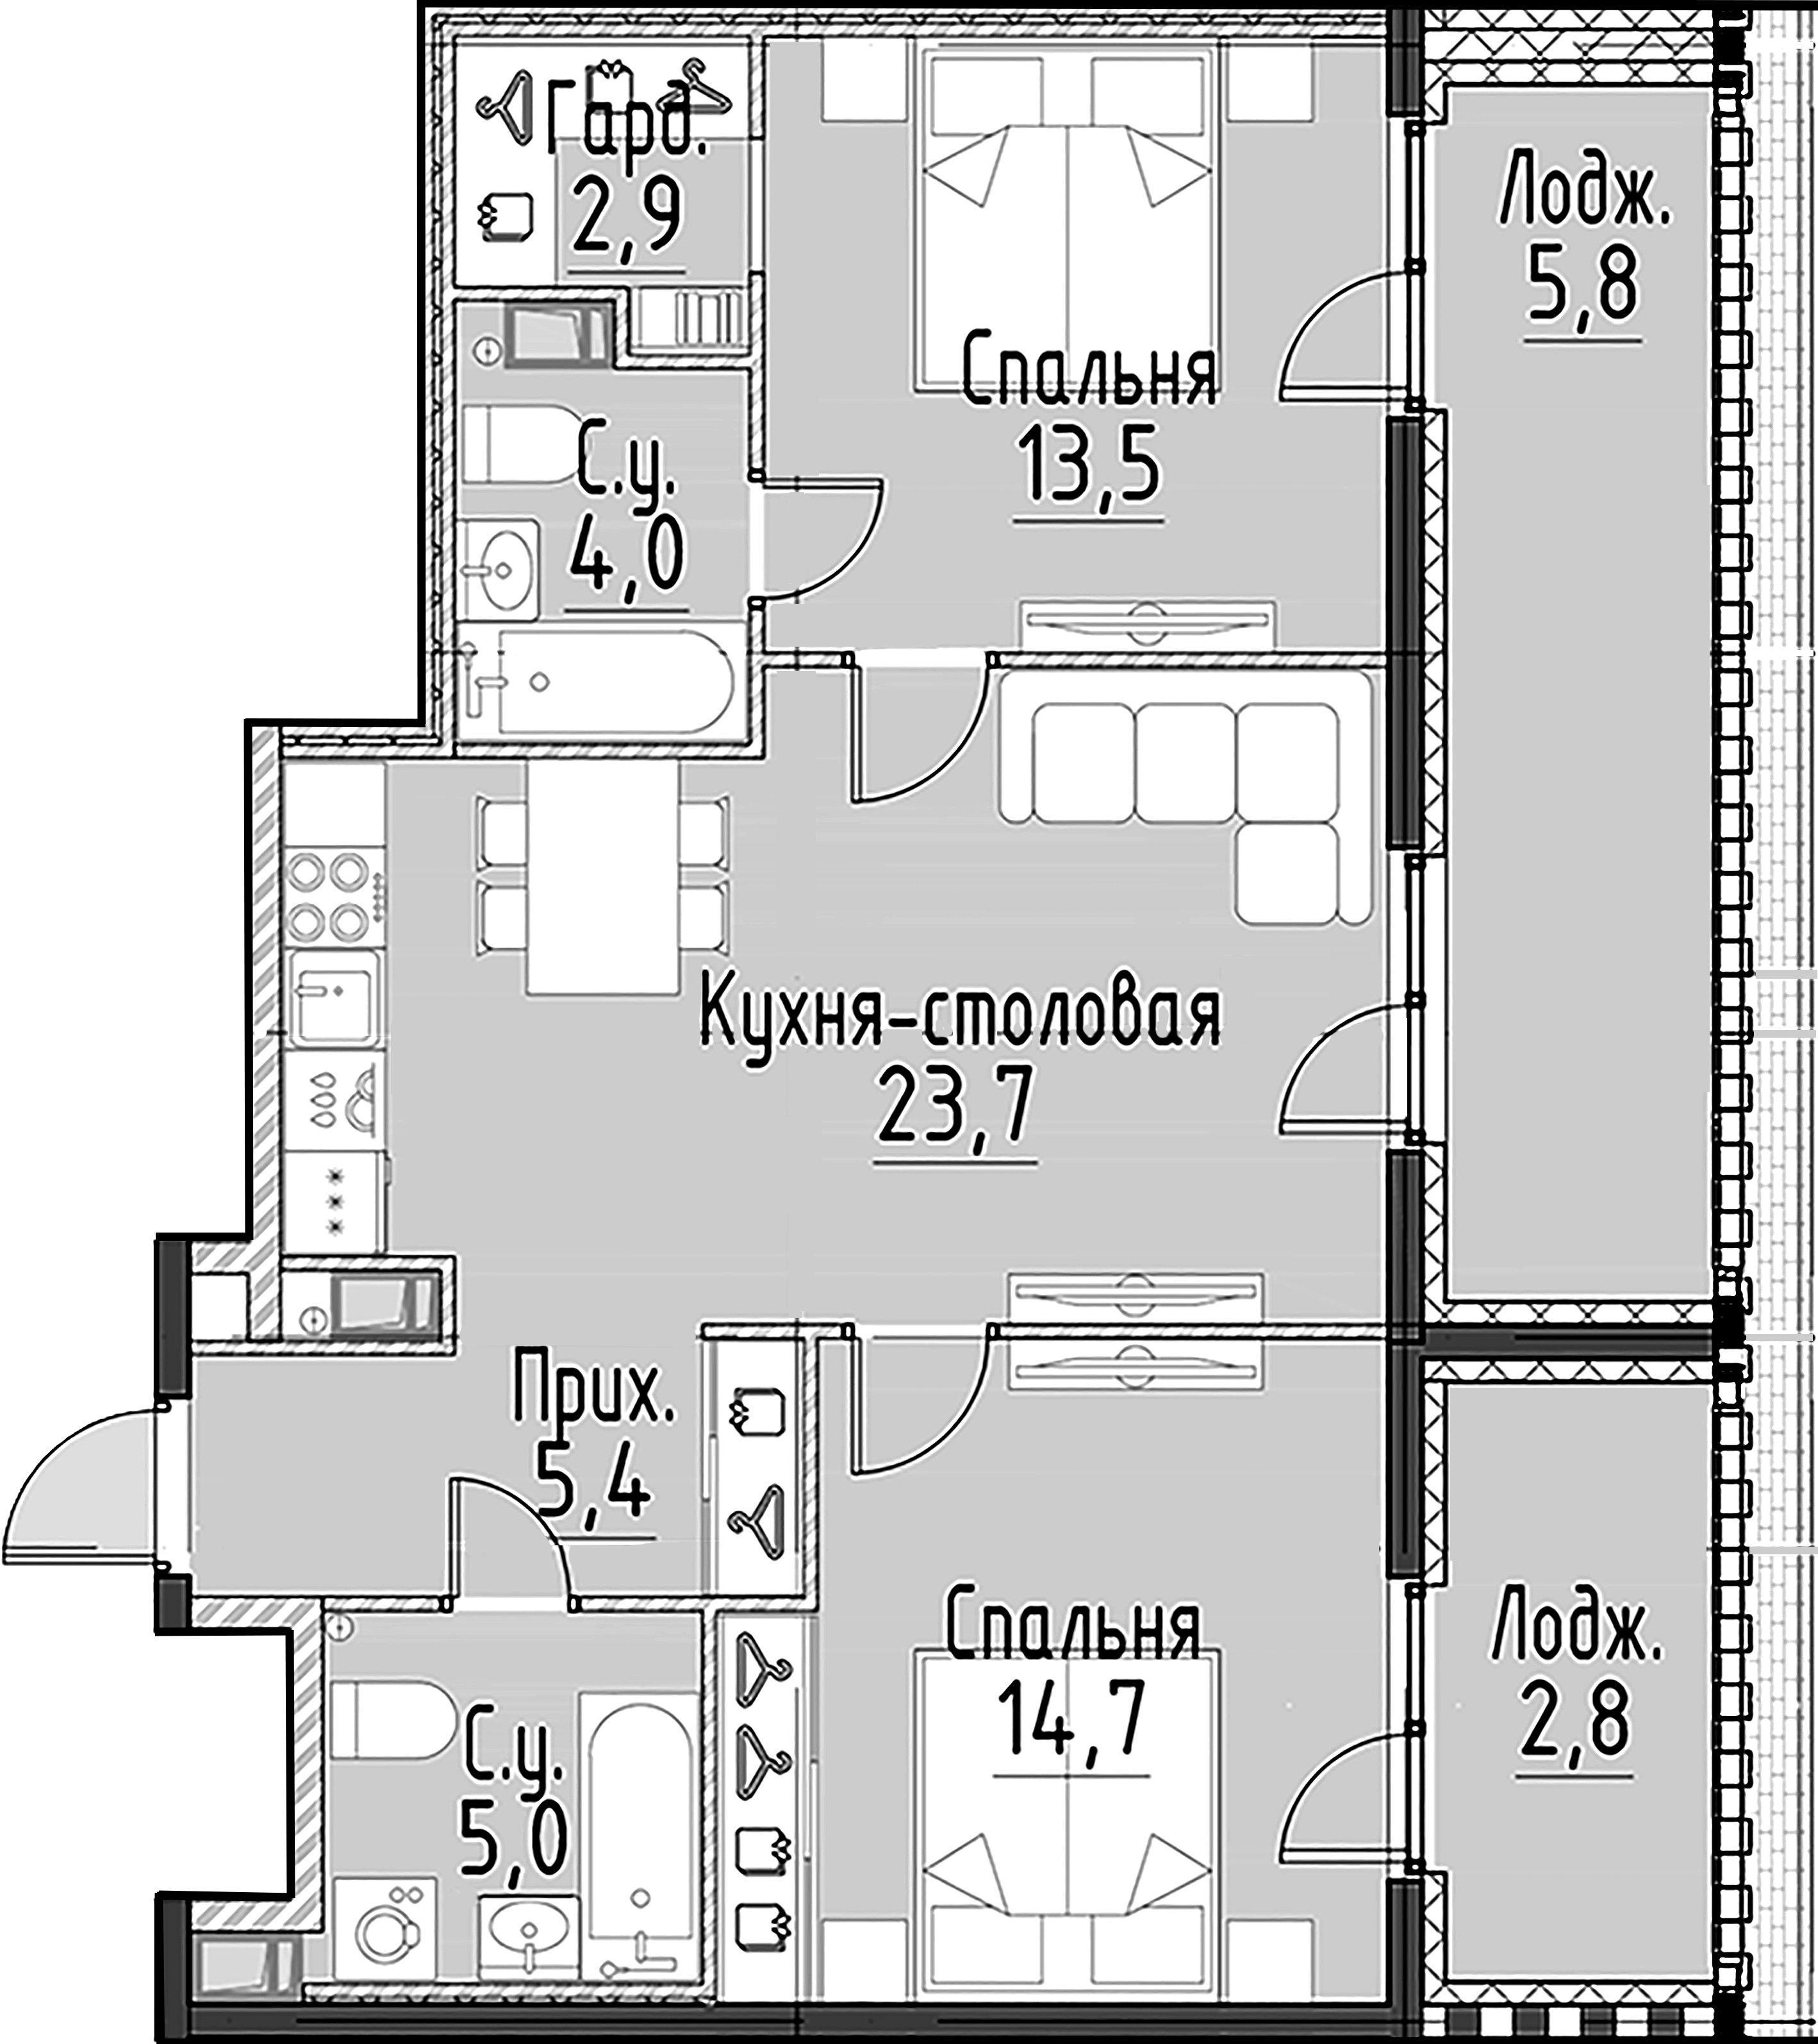 2-комнатная квартира  №111 в Моисеенко, 10: 69.3 м², этаж 4 - купить в Санкт-Петербурге